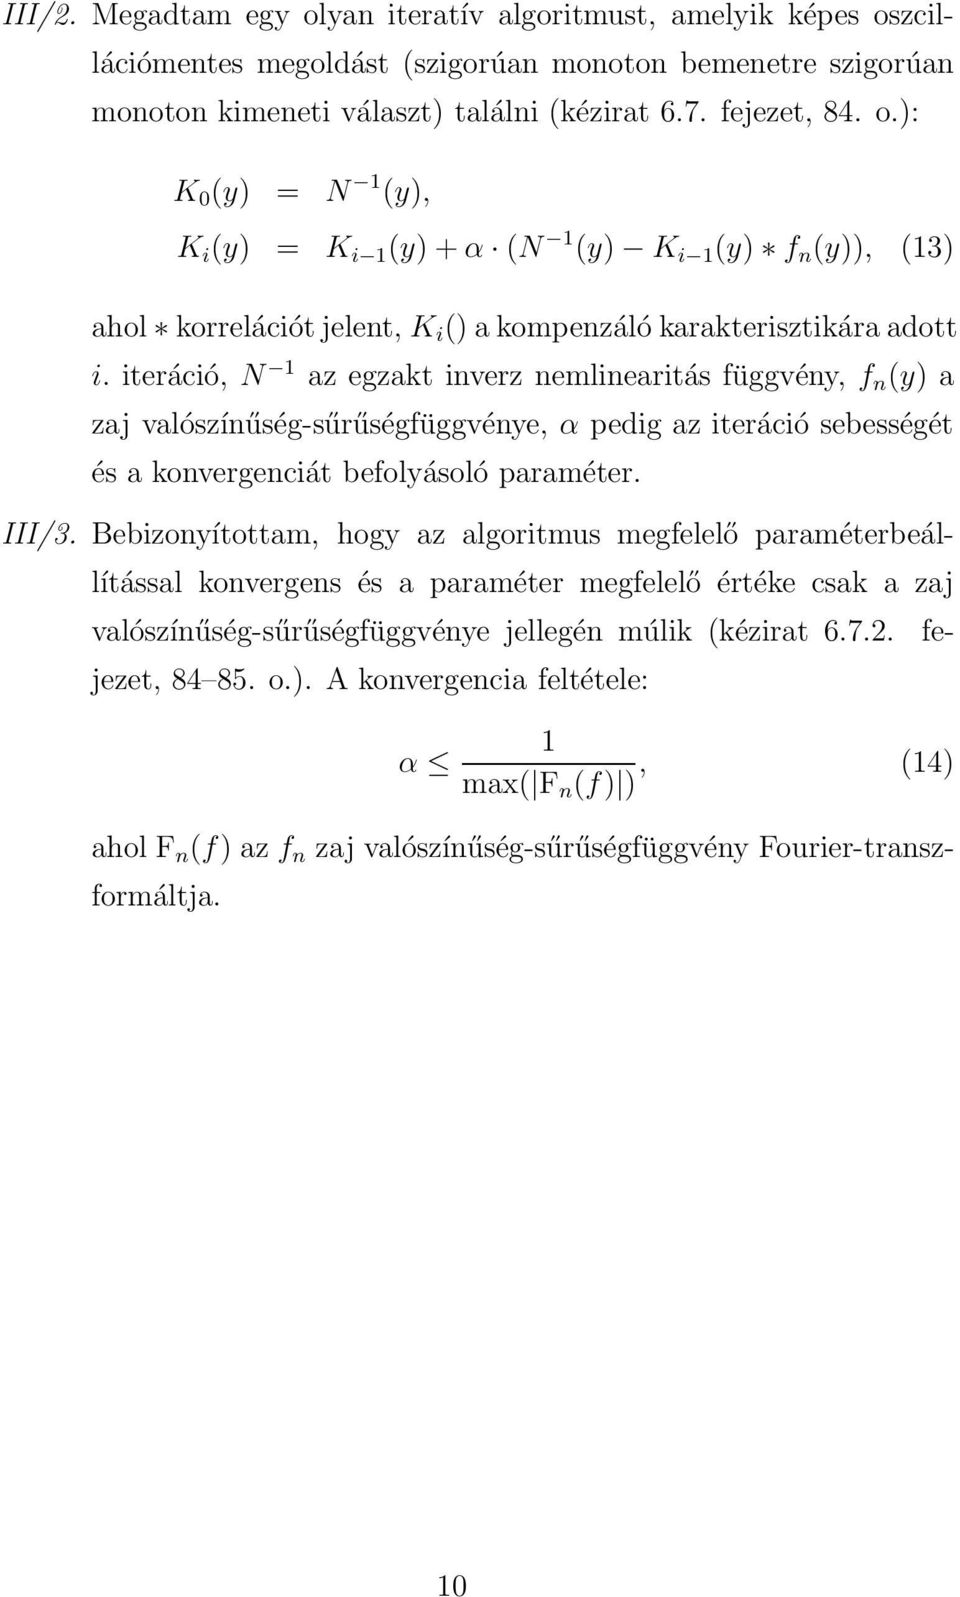 Bebizonyítottam, hogy az algoritmus megfelelő paraméterbeállítással konvergens és a paraméter megfelelő értéke csak a zaj valószínűség-sűrűségfüggvénye jellegén múlik (kézirat 6.7.2. fejezet, 84 85.